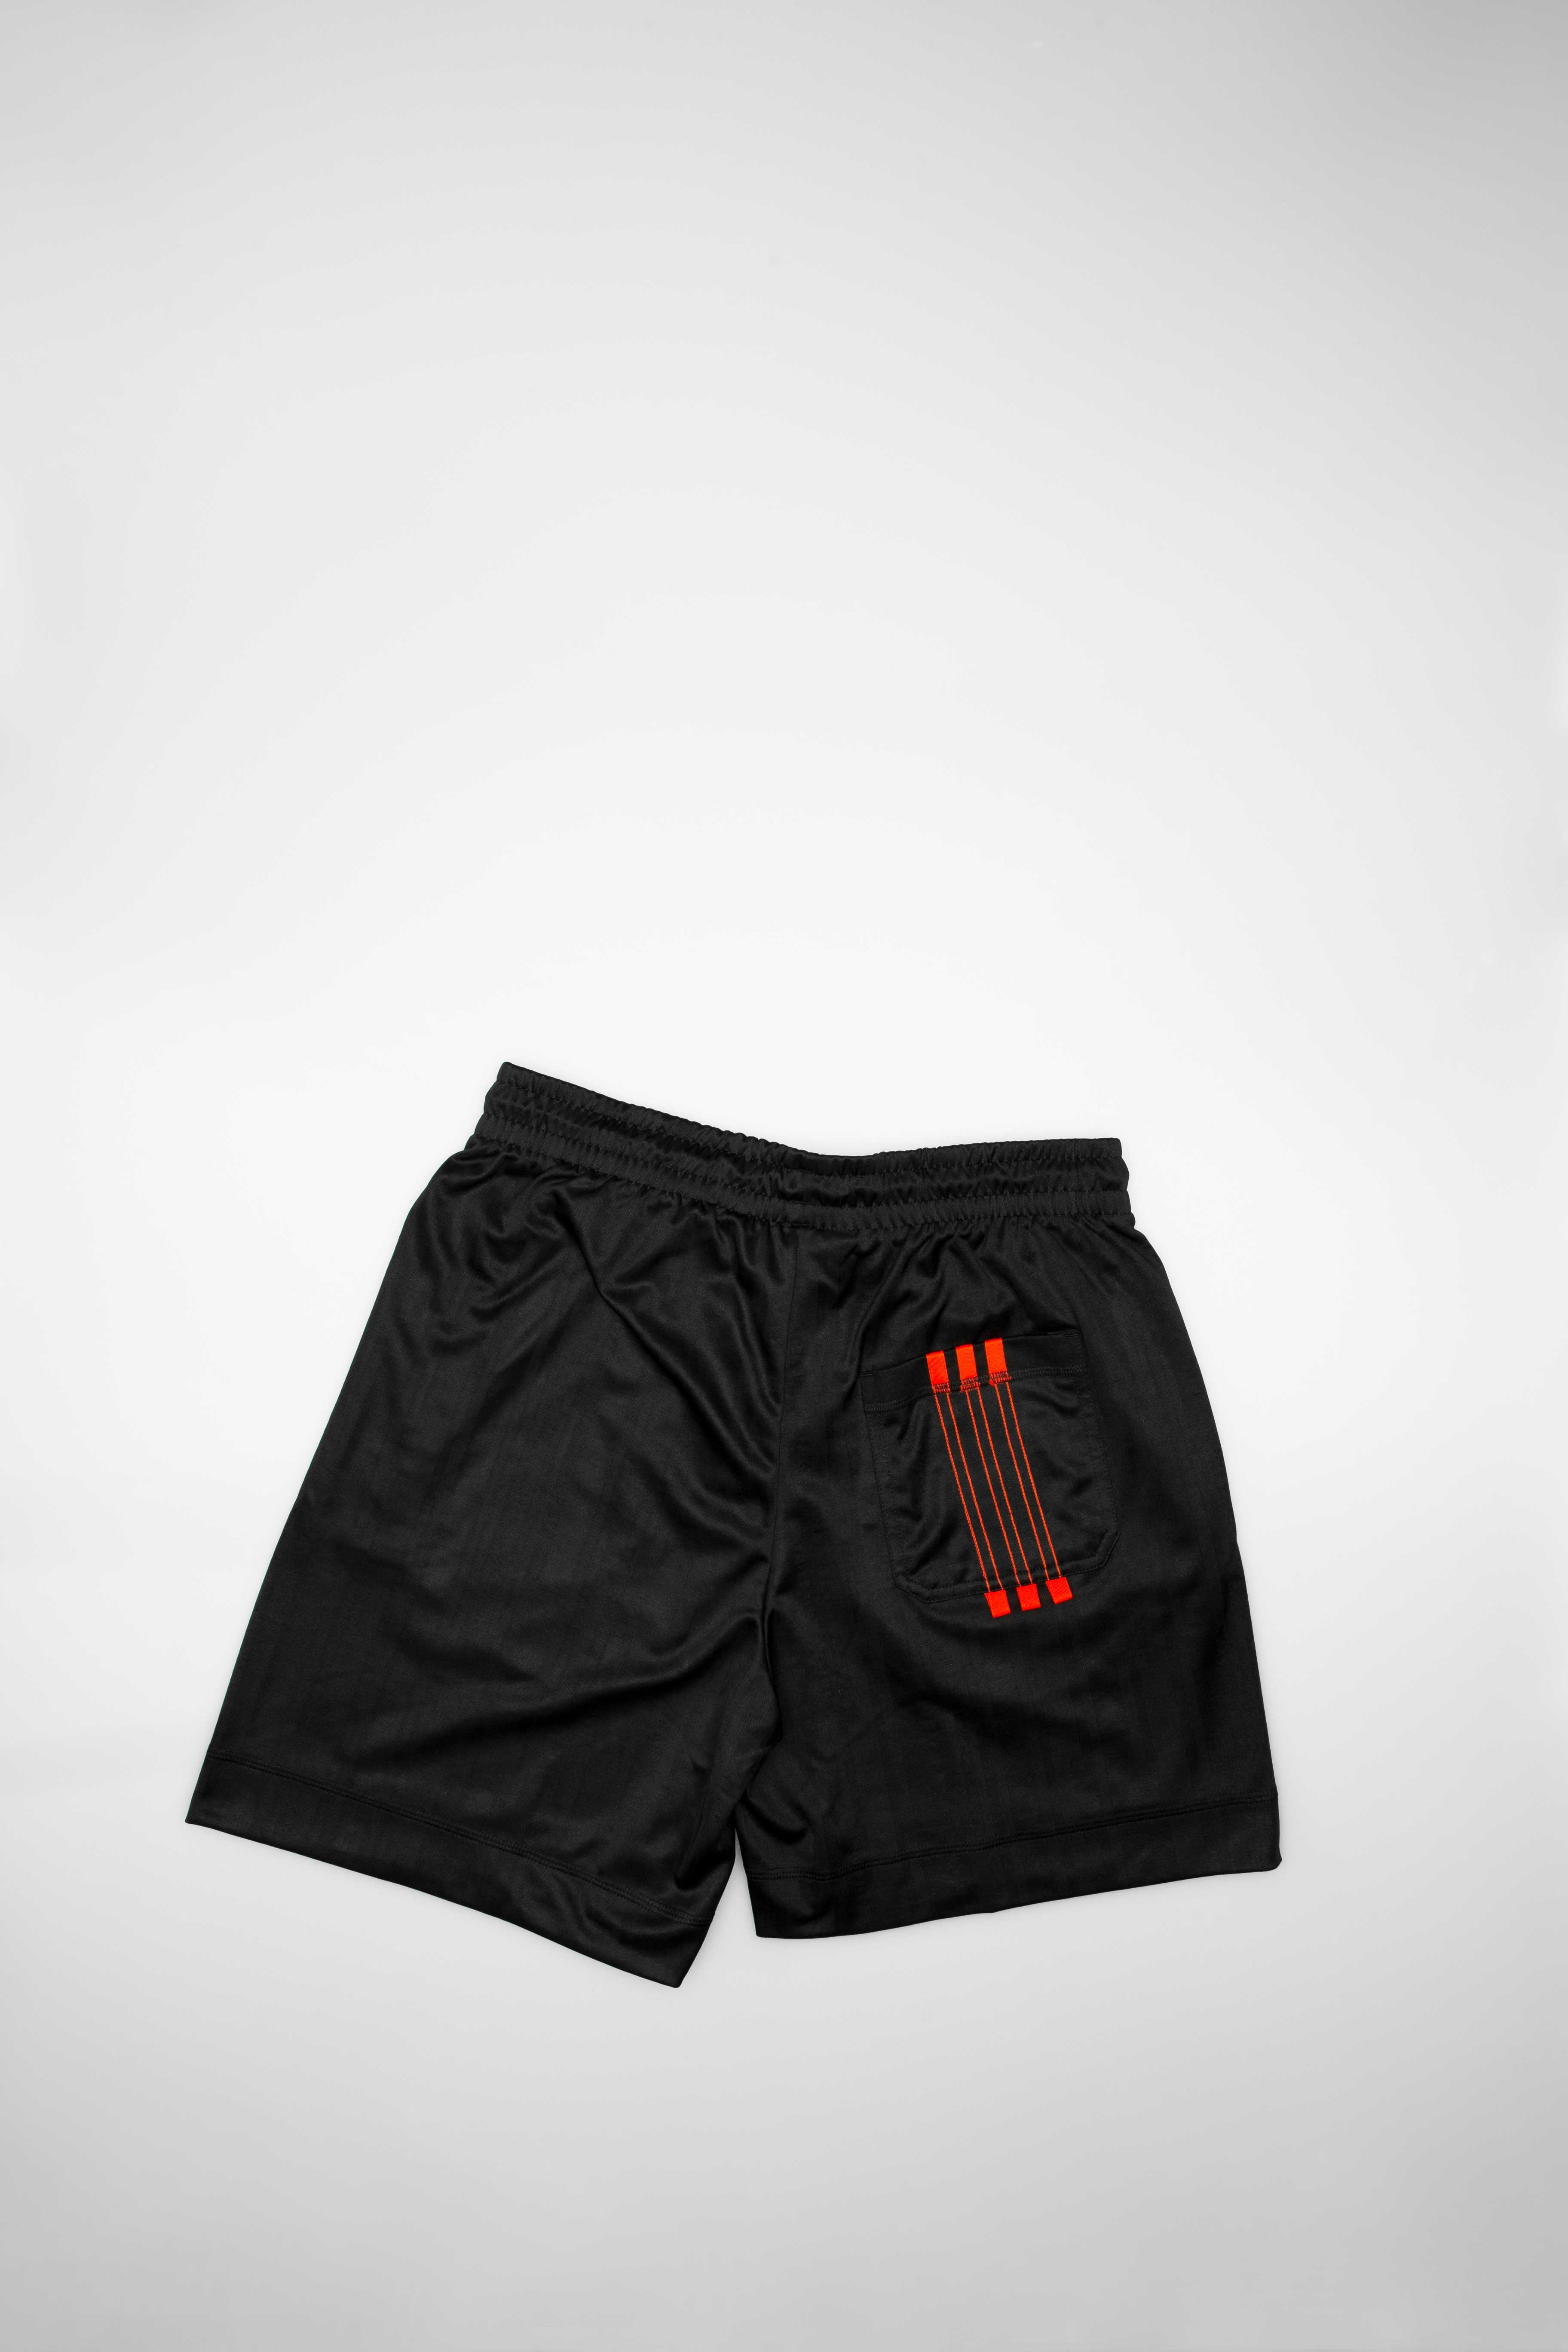 Milagroso George Eliot Receptor Adidas Consortium DM9683 adidas Originals X Alexander Wang Mens Soccer  Shorts - Black/Red – ShopNiceKicks.com